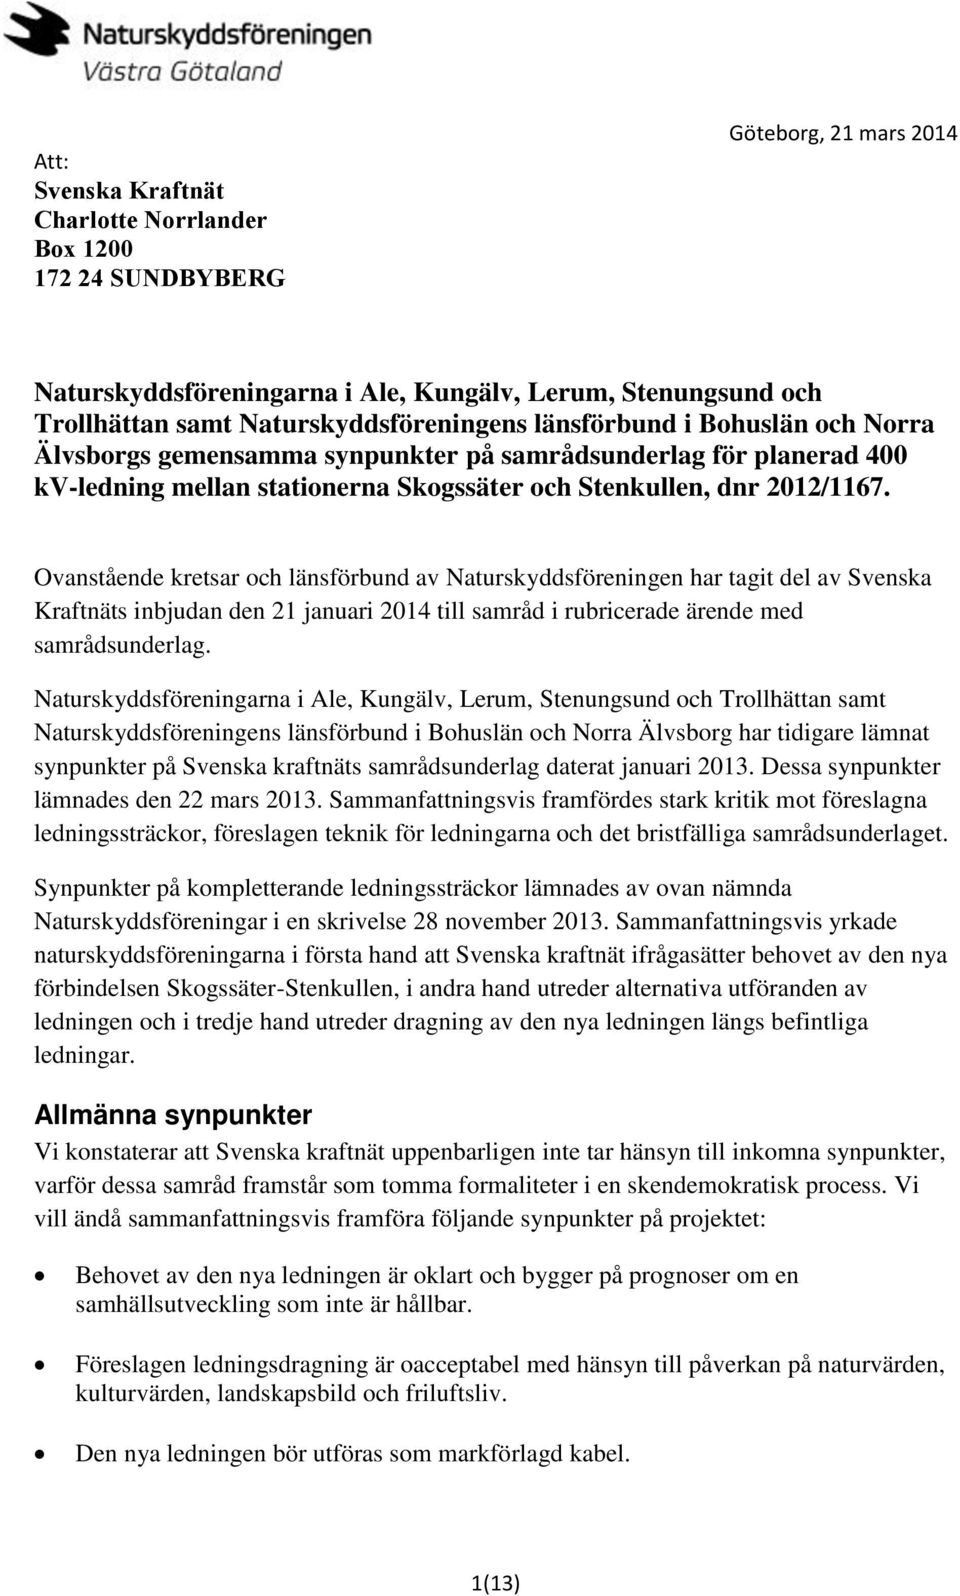 Ovanstående kretsar och länsförbund av Naturskyddsföreningen har tagit del av Svenska Kraftnäts inbjudan den 21 januari 2014 till samråd i rubricerade ärende med samrådsunderlag.